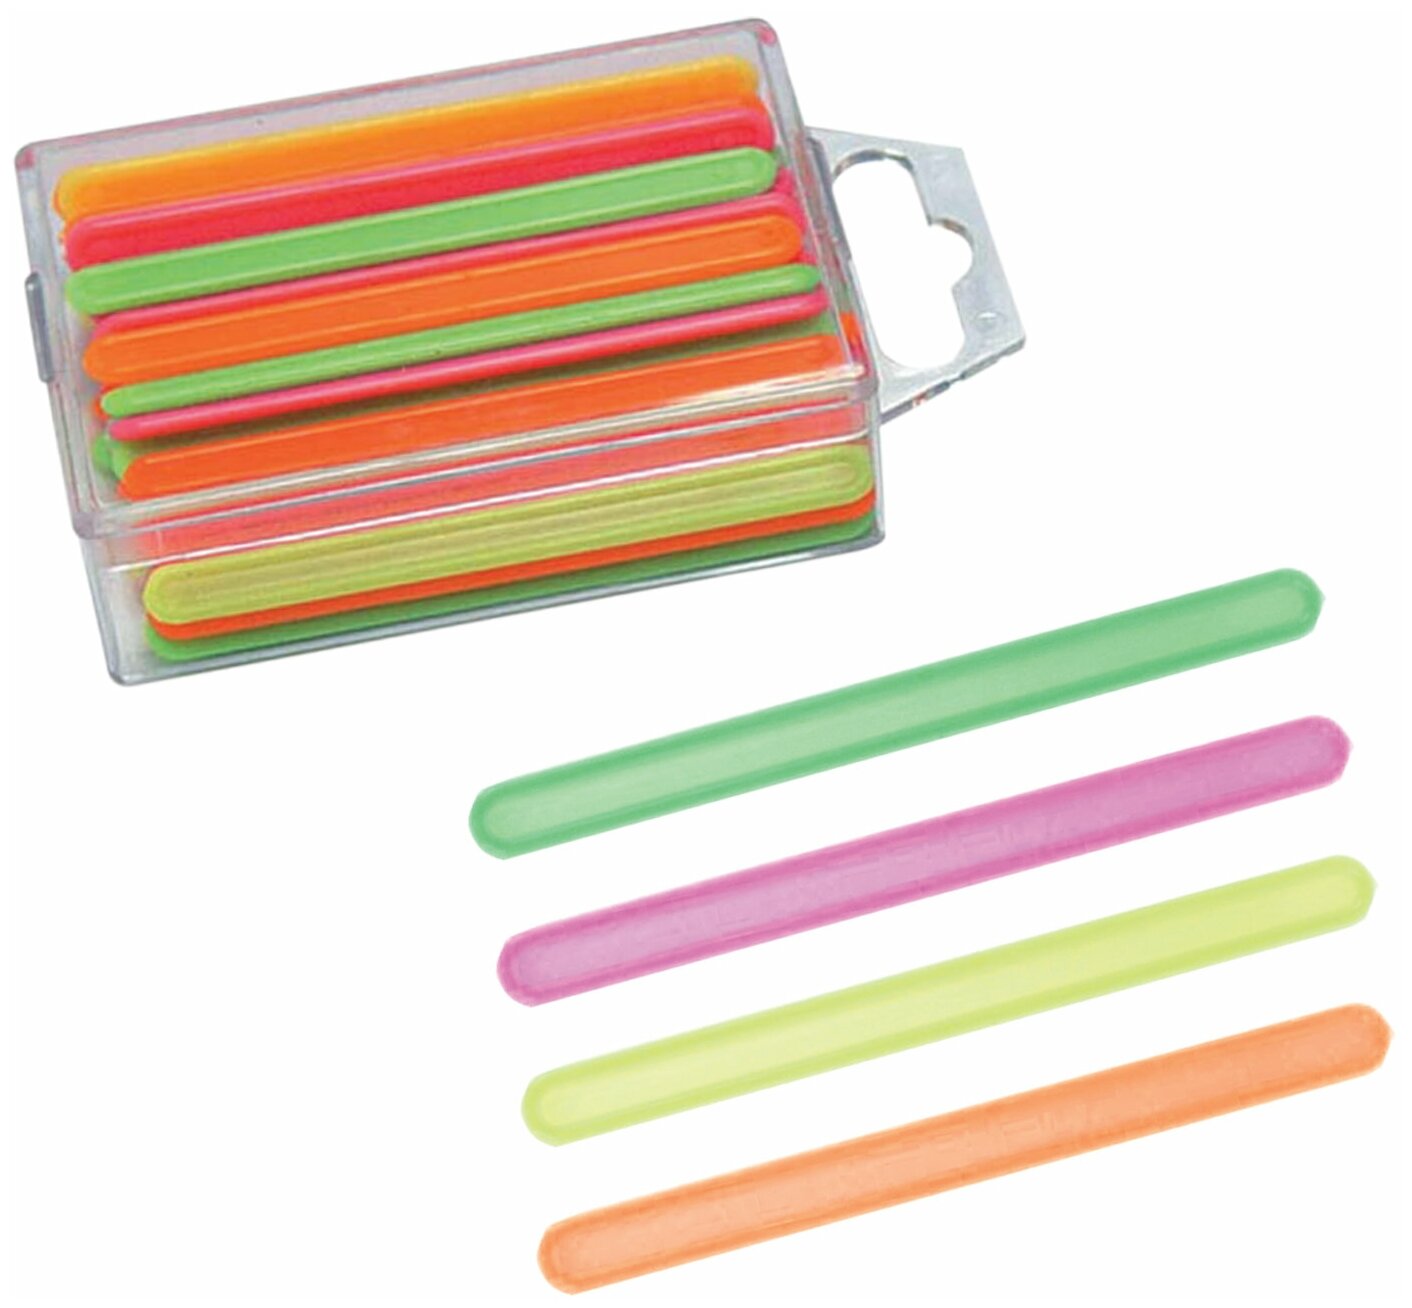 Счетные палочки (60 штук) многоцветные, в евробоксе, СП02 - 1 шт.